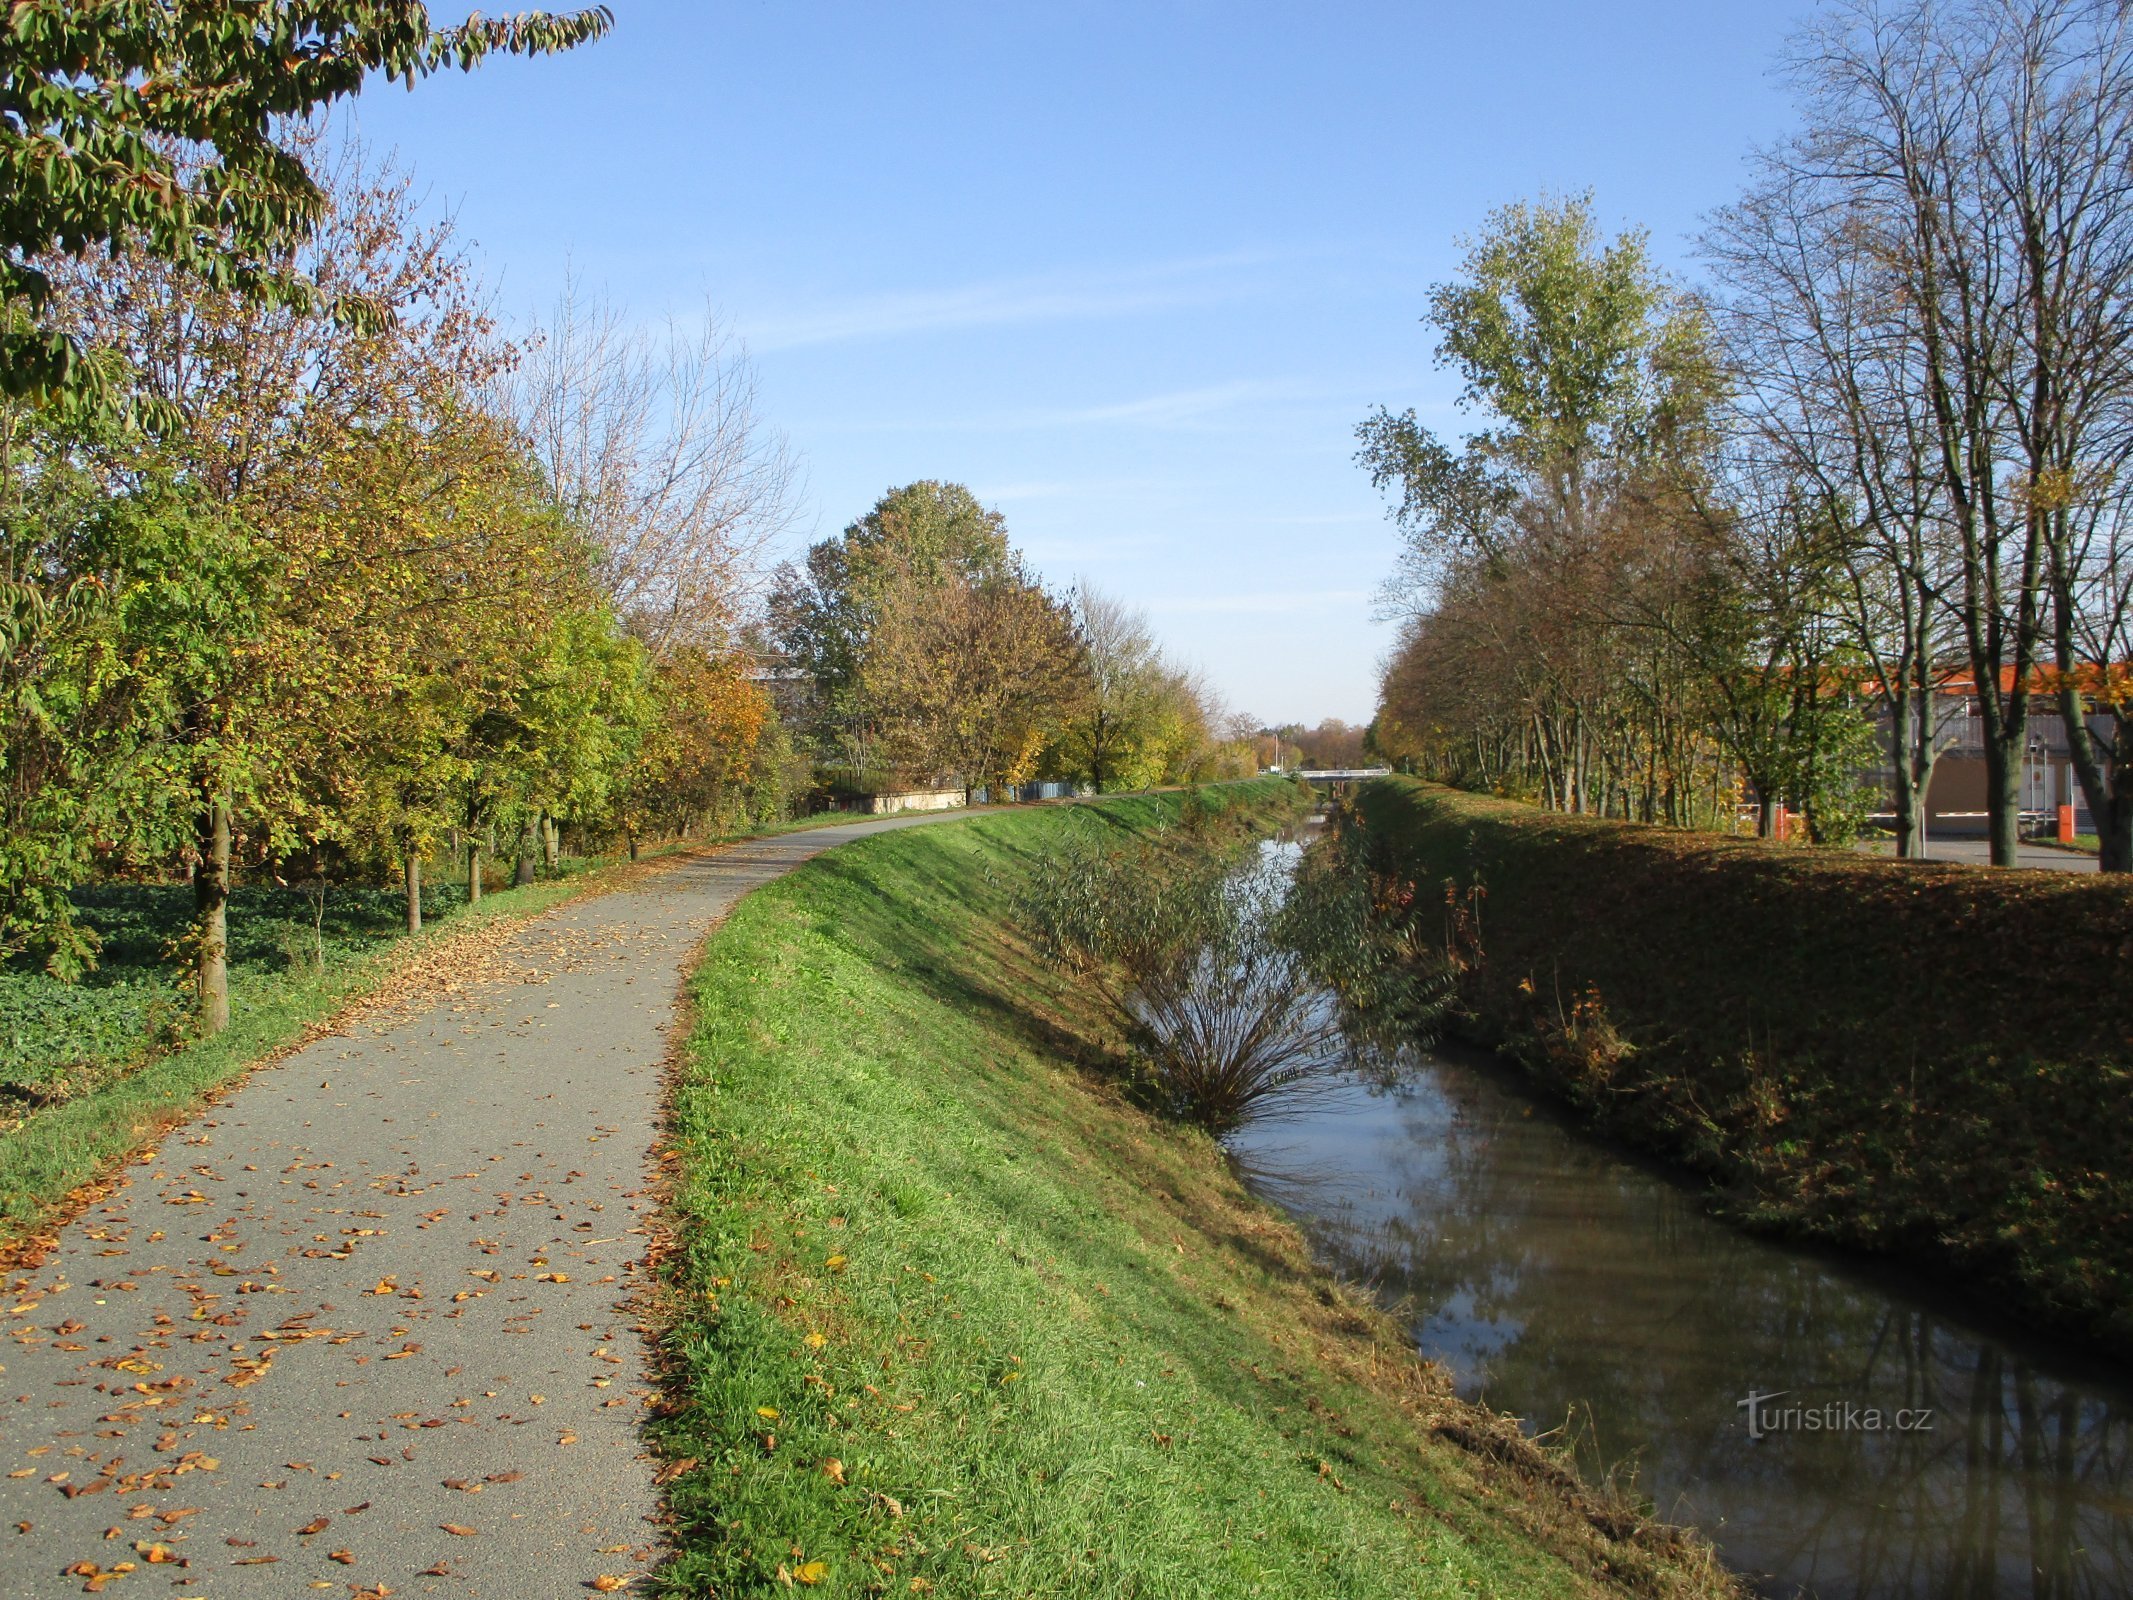 Piletic stream near Rubena (Věkoše)